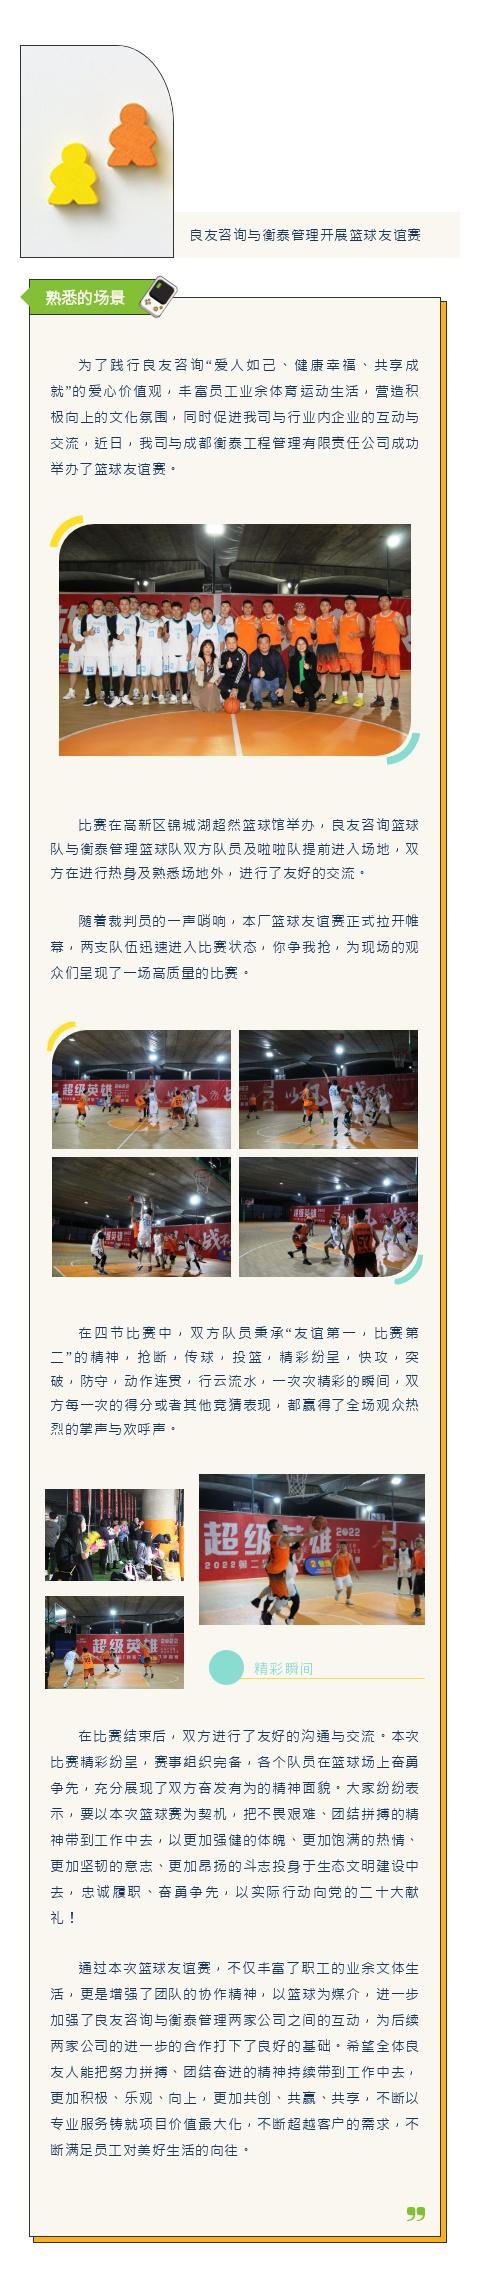 精彩良友丨杏彩体育官网app与衡泰管理开展篮球友谊赛